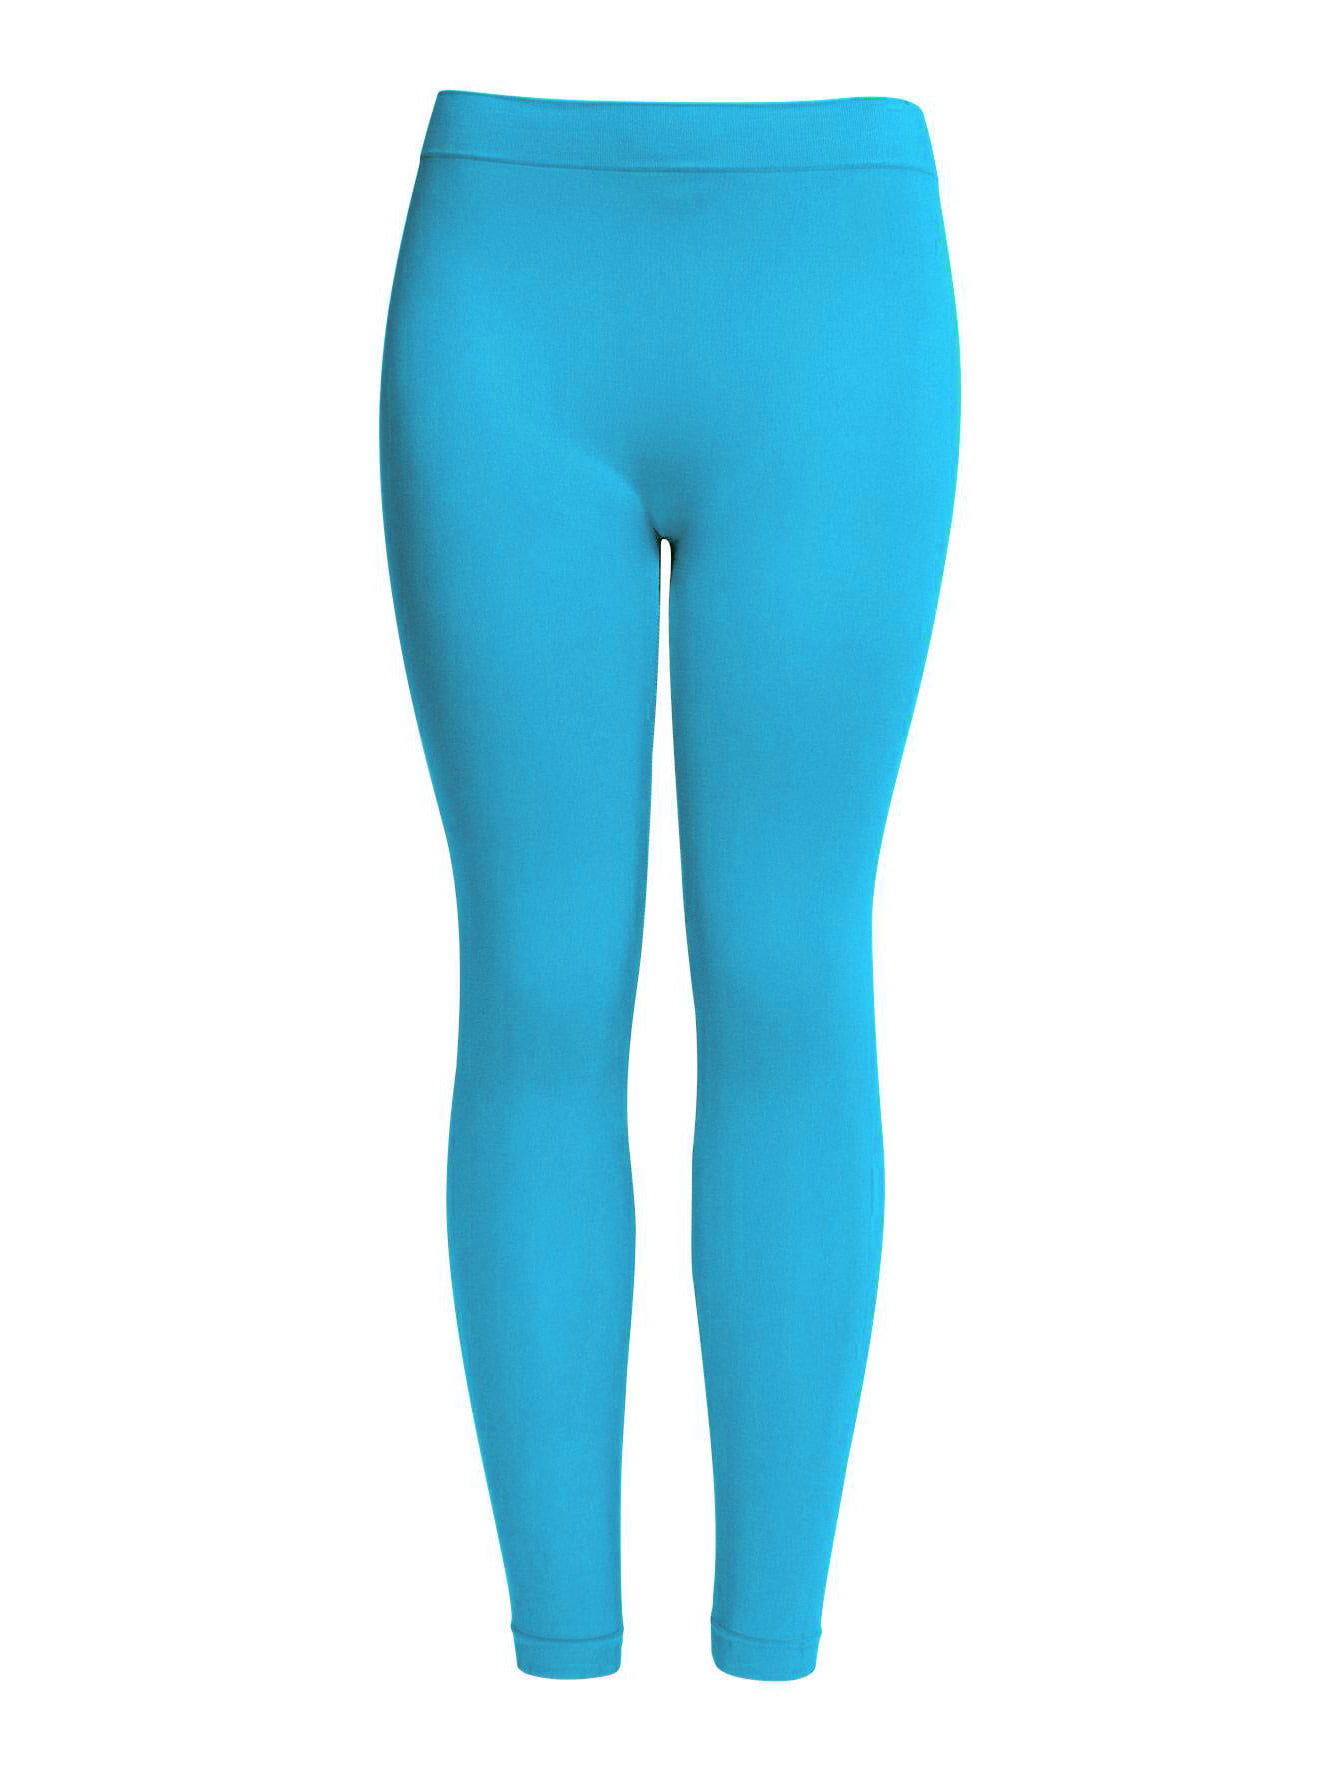 New Womens Leggings Tights Yoga - Aqua - Walmart.com